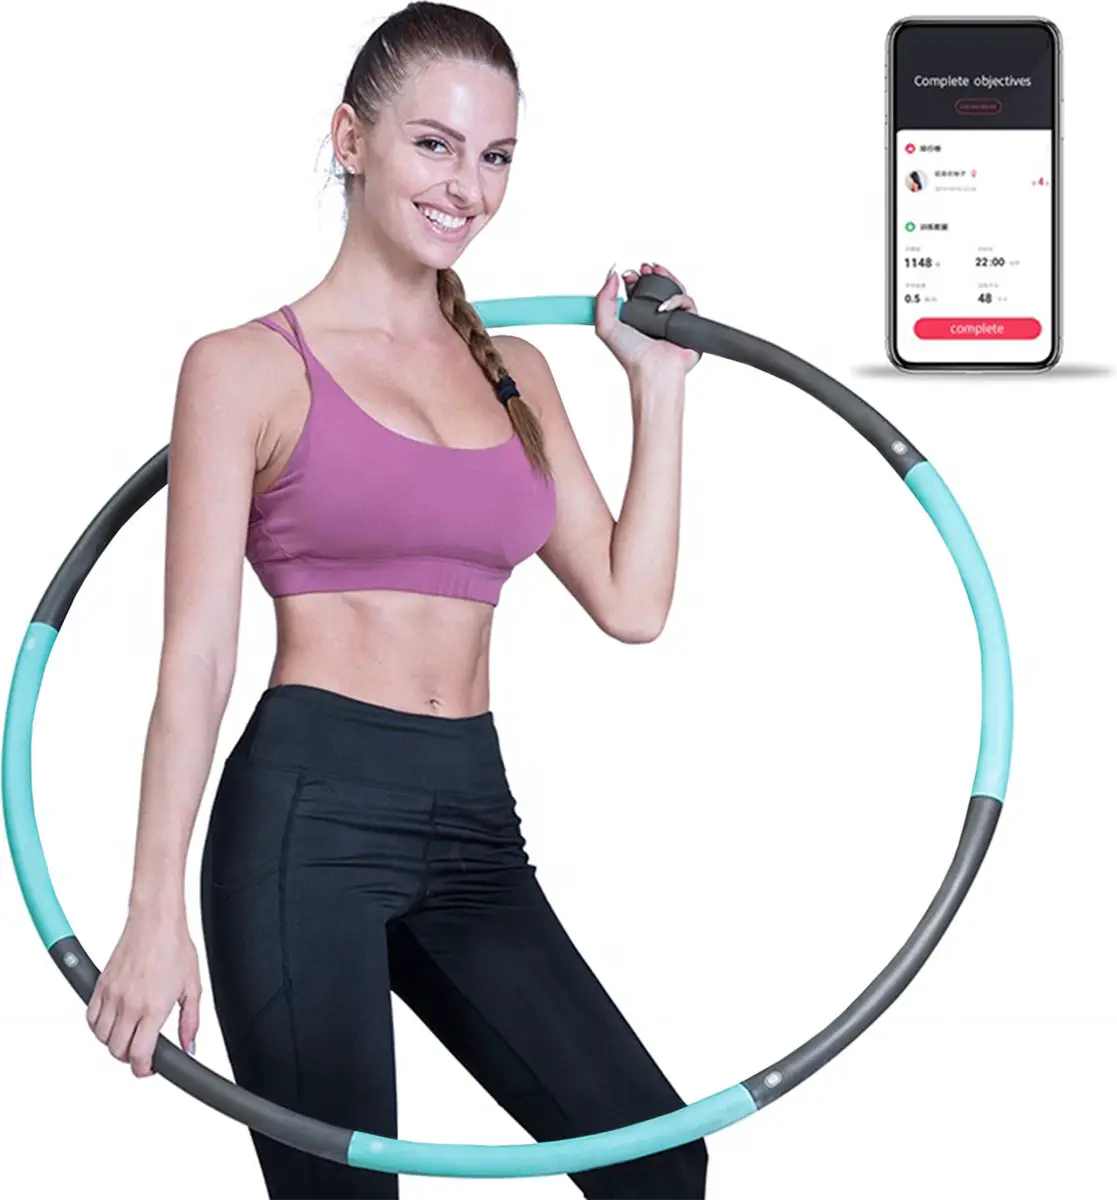 Beste fitness hoelahoep met app- Smart Hoelahoep met Slimme Sensor en App